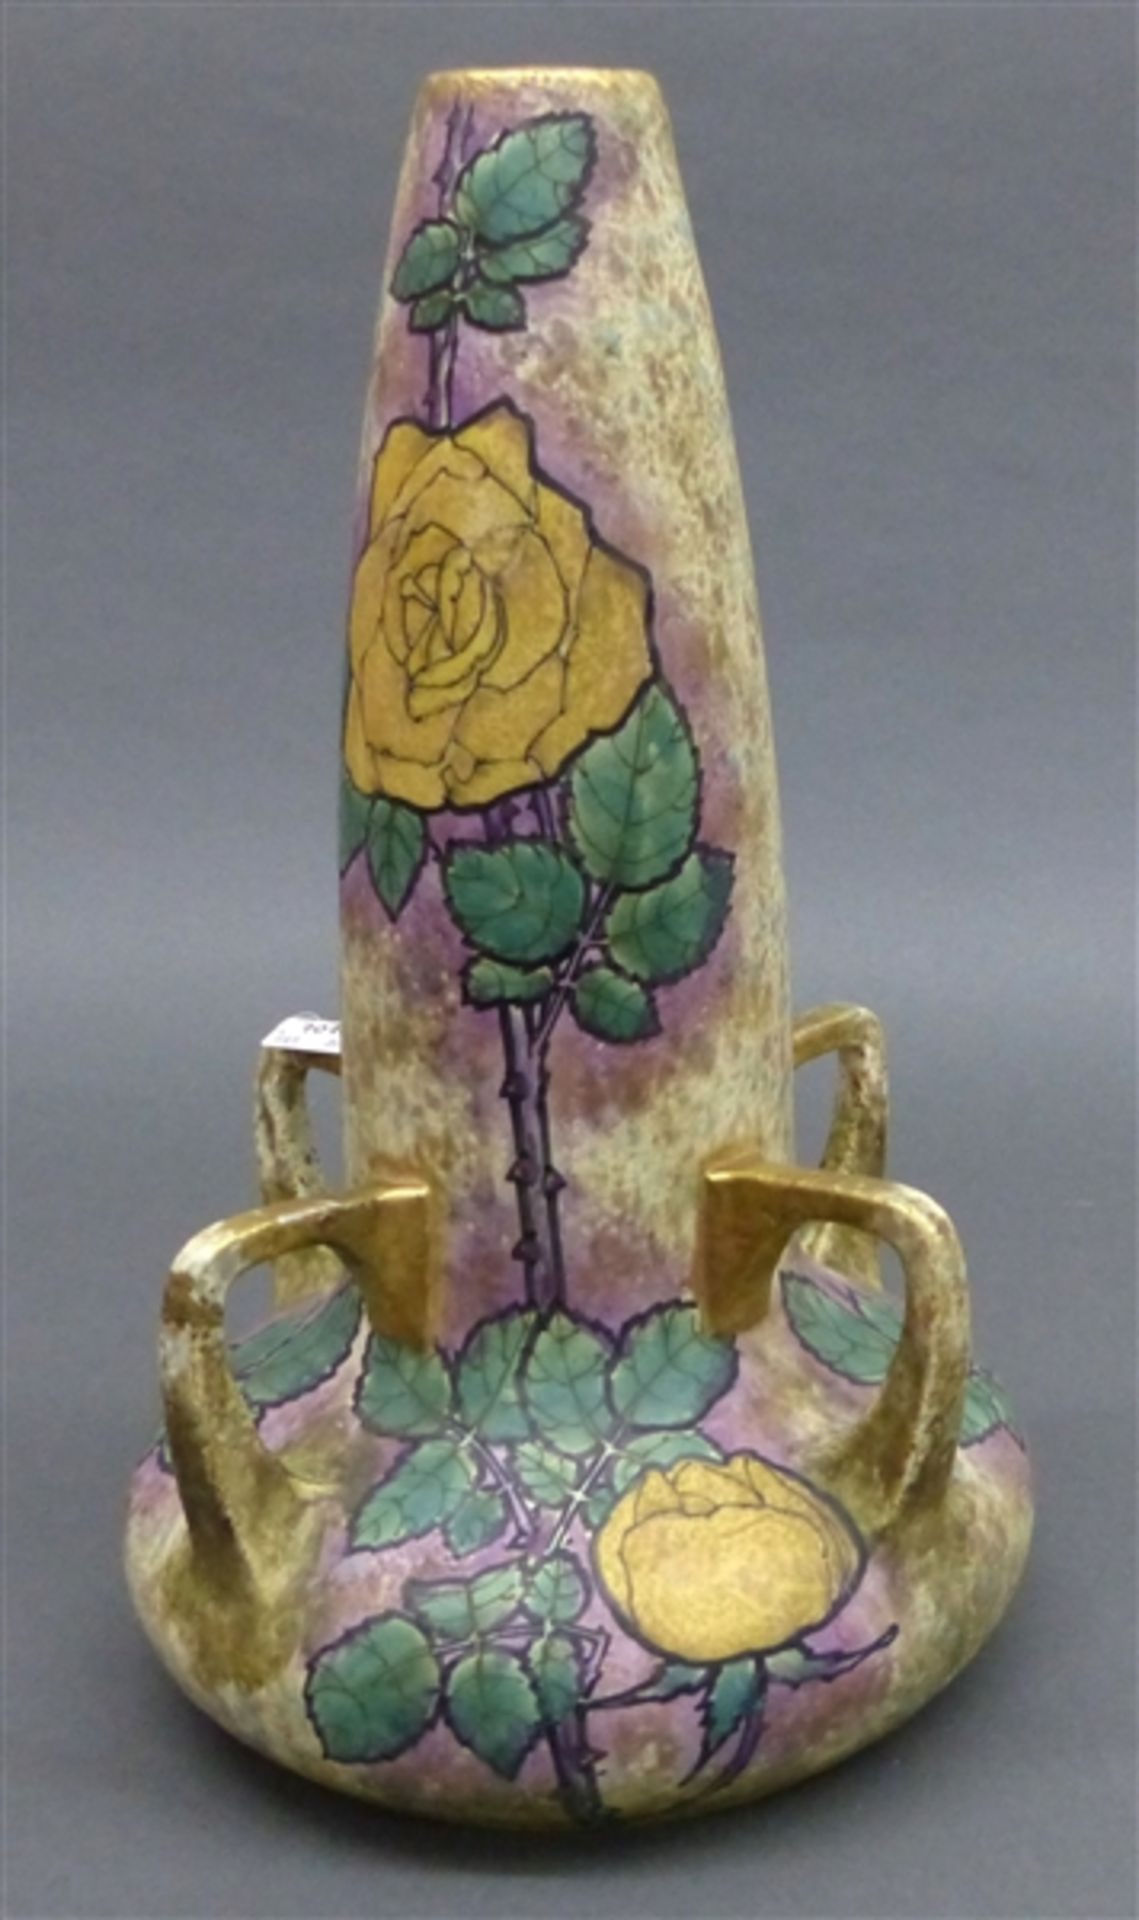 Ziervase, um 1900 Keramik, Manufaktur Amphora, Austria, gemarkt, No. 3879, gelbes Rosendekor,